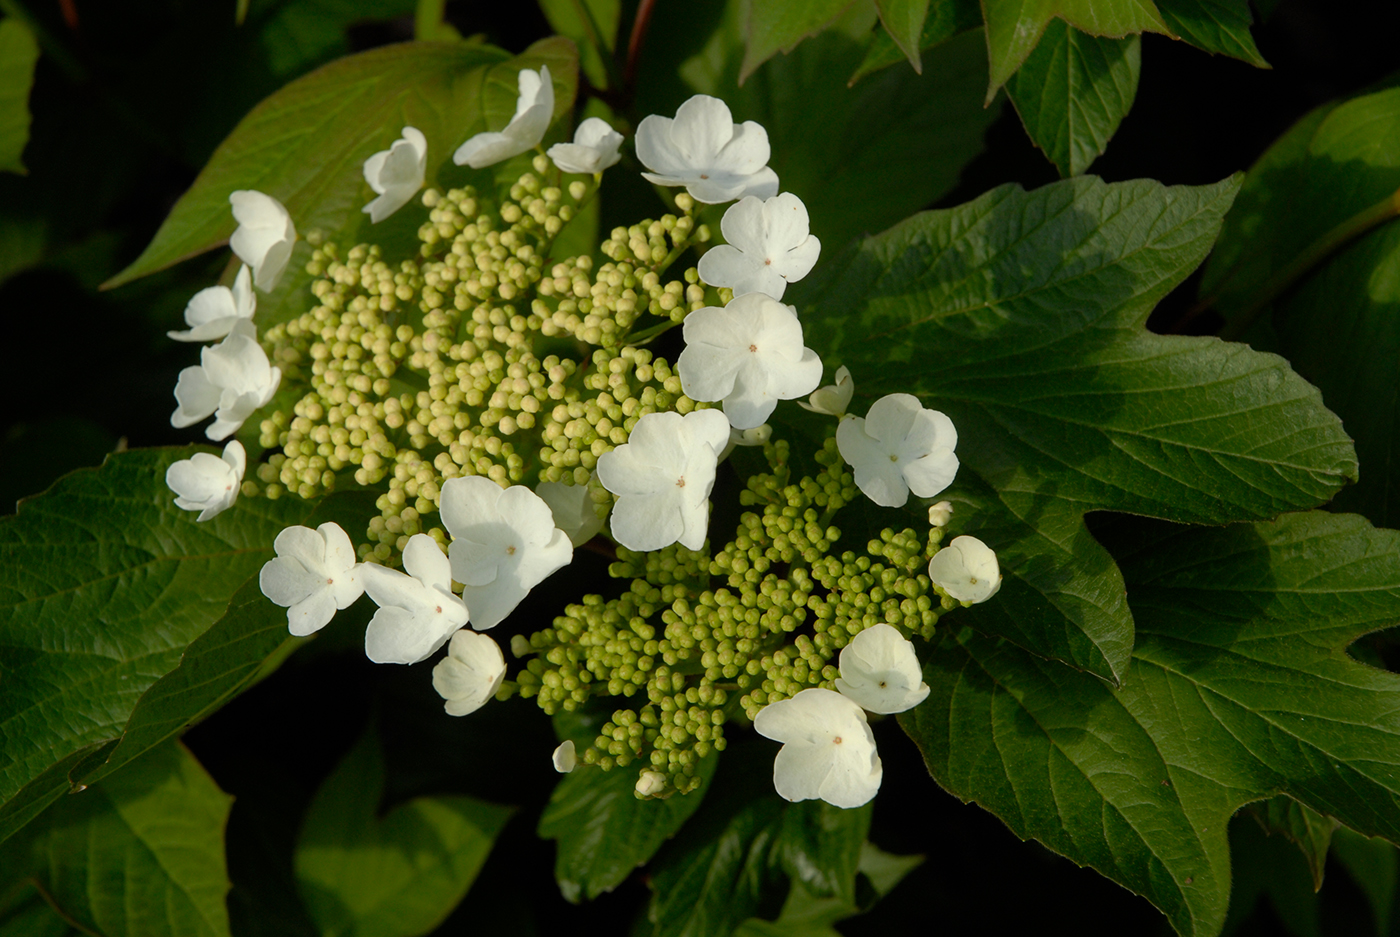 American cranberrybush viburnum (Viburnum trilobum)